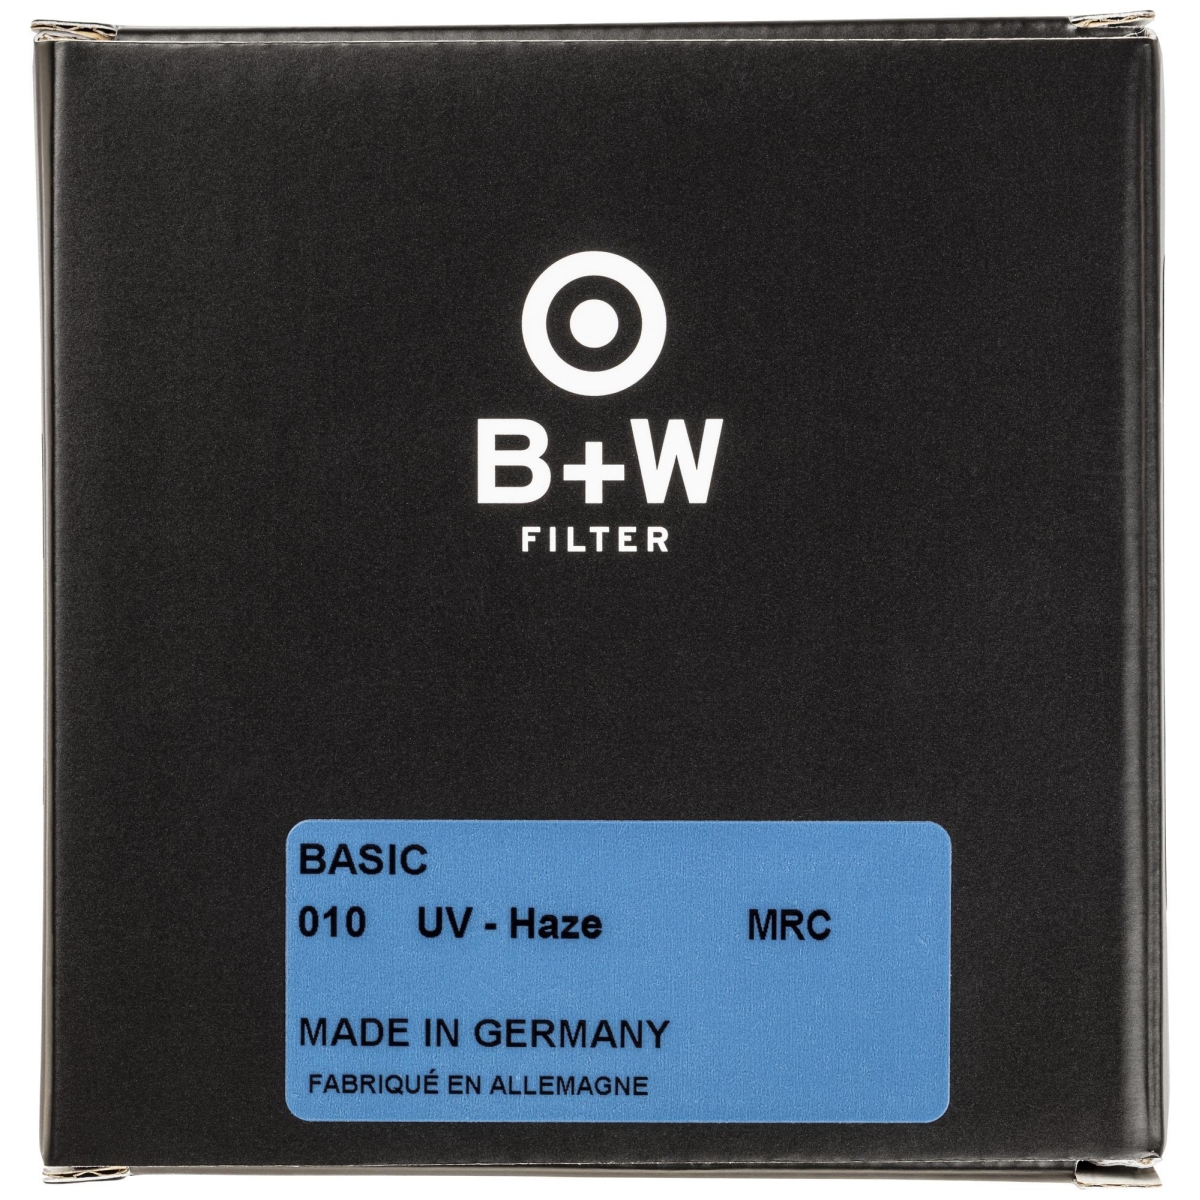 B+W UV 86 mm MRC Basic